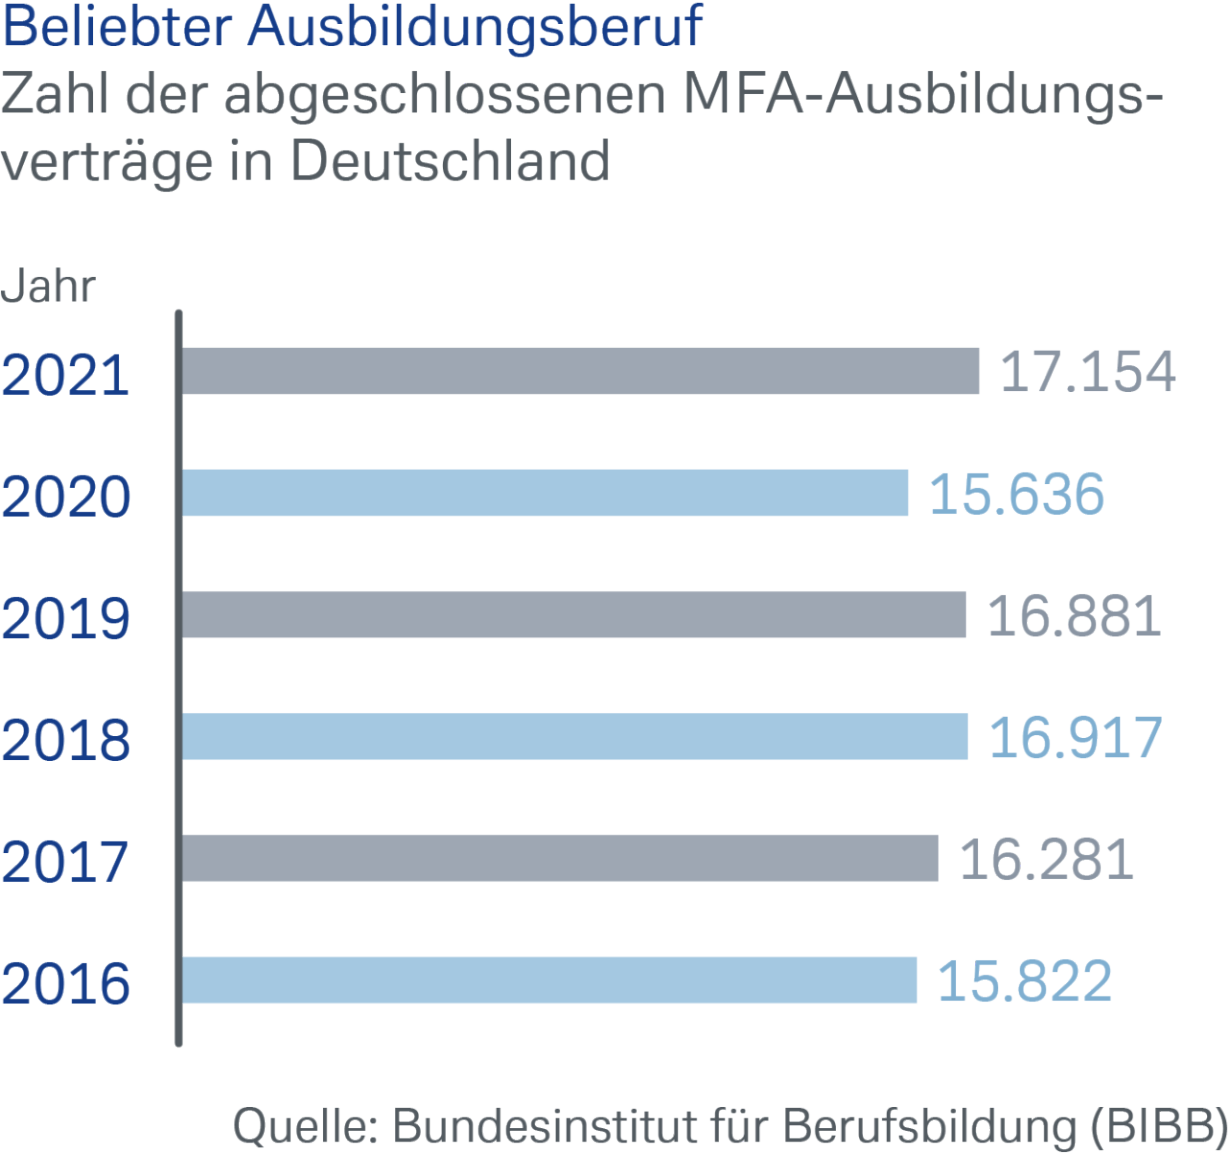 Zahl der abgeschlossenen MFA-Ausbildungsverträge in Deutschland